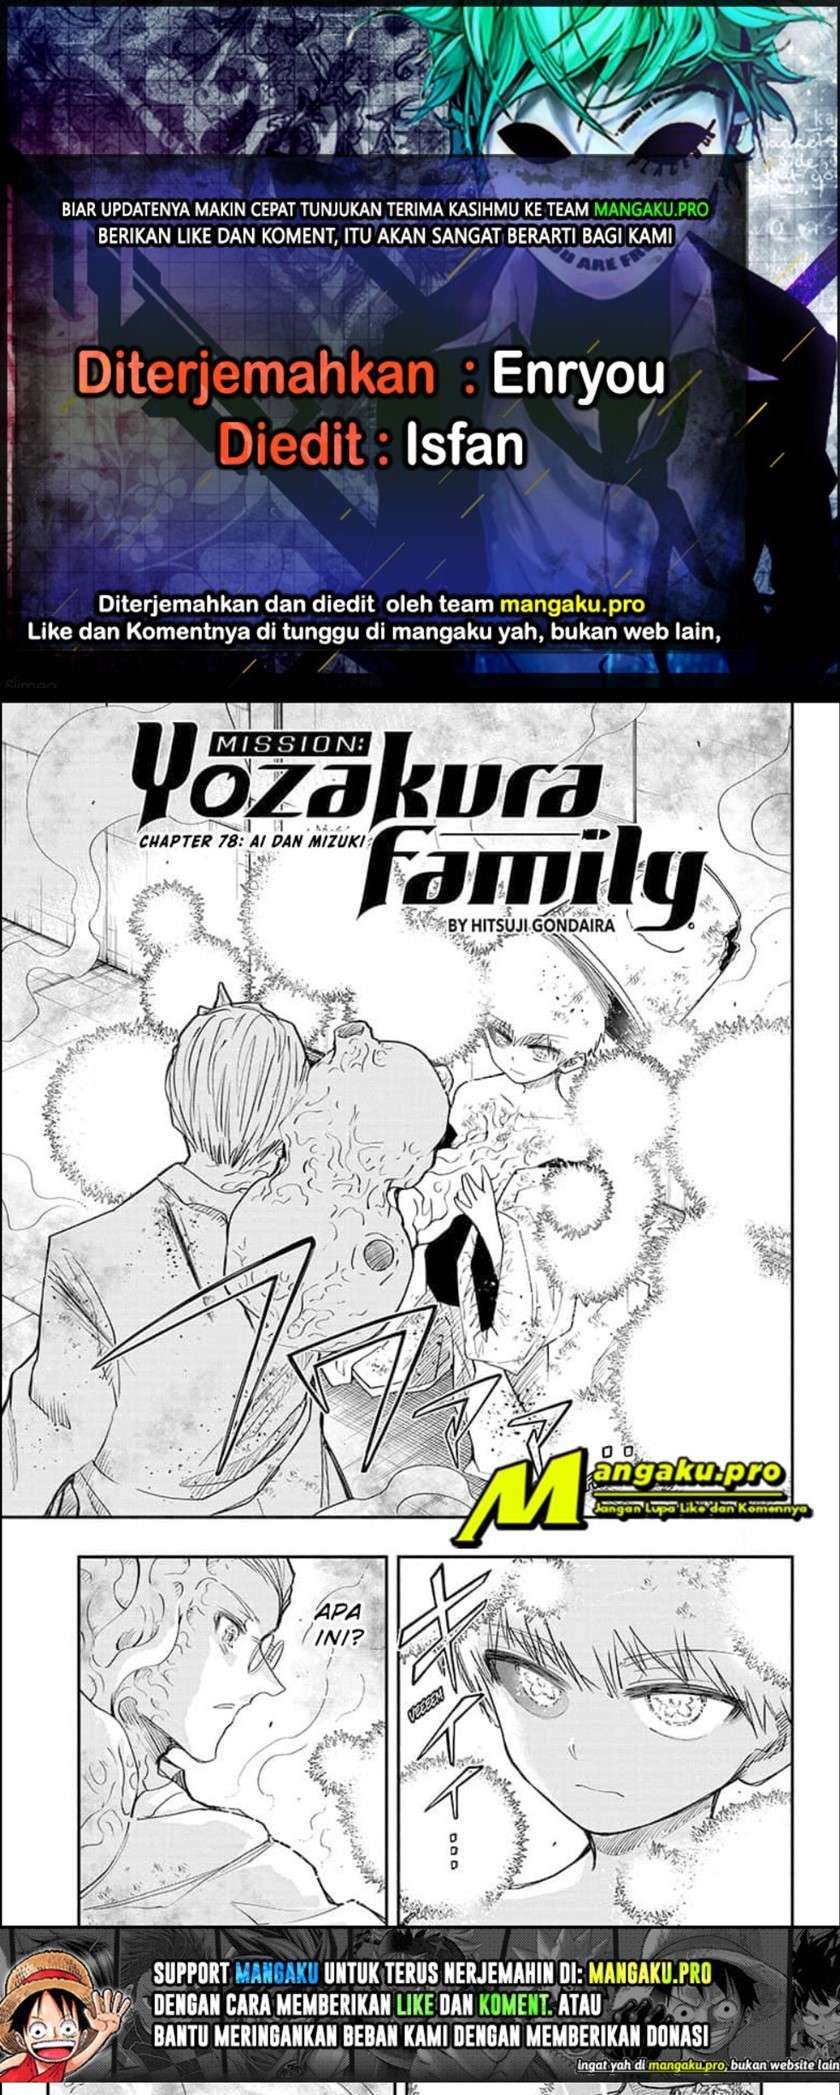 Mission: Yozakura Family Chapter 78